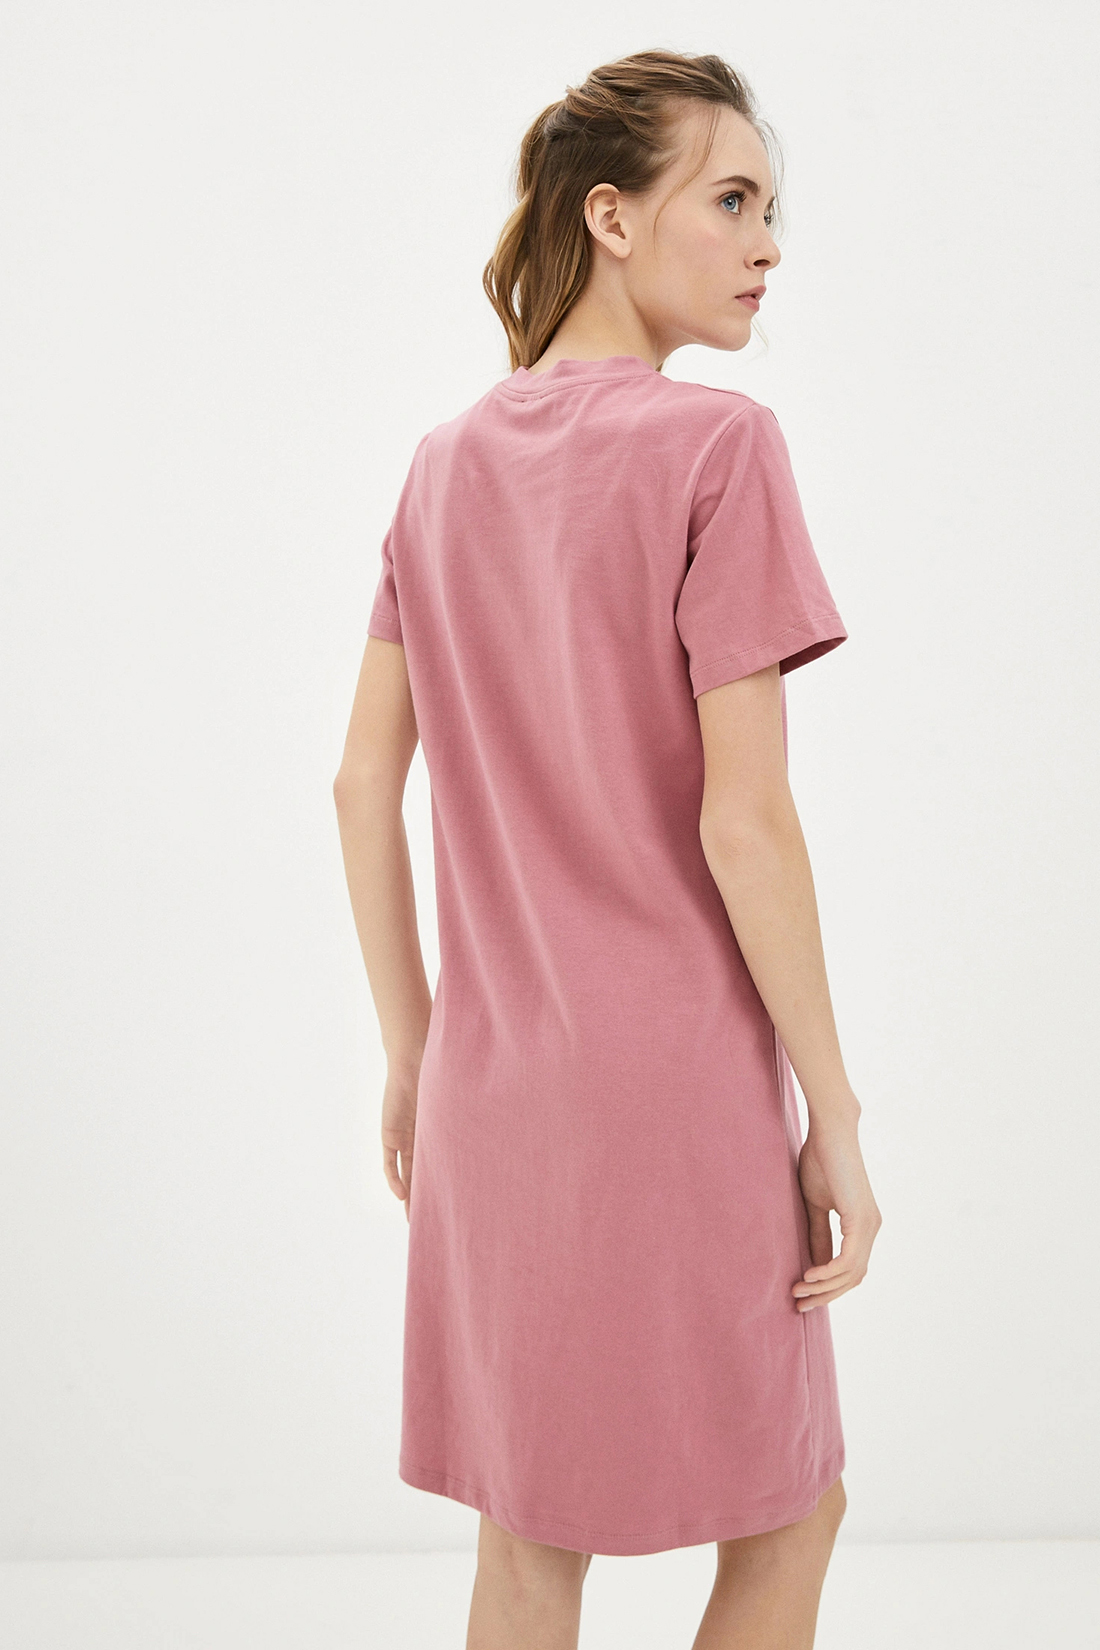 Платье (арт. baon B451033), размер XXL, цвет розовый Платье (арт. baon B451033) - фото 2